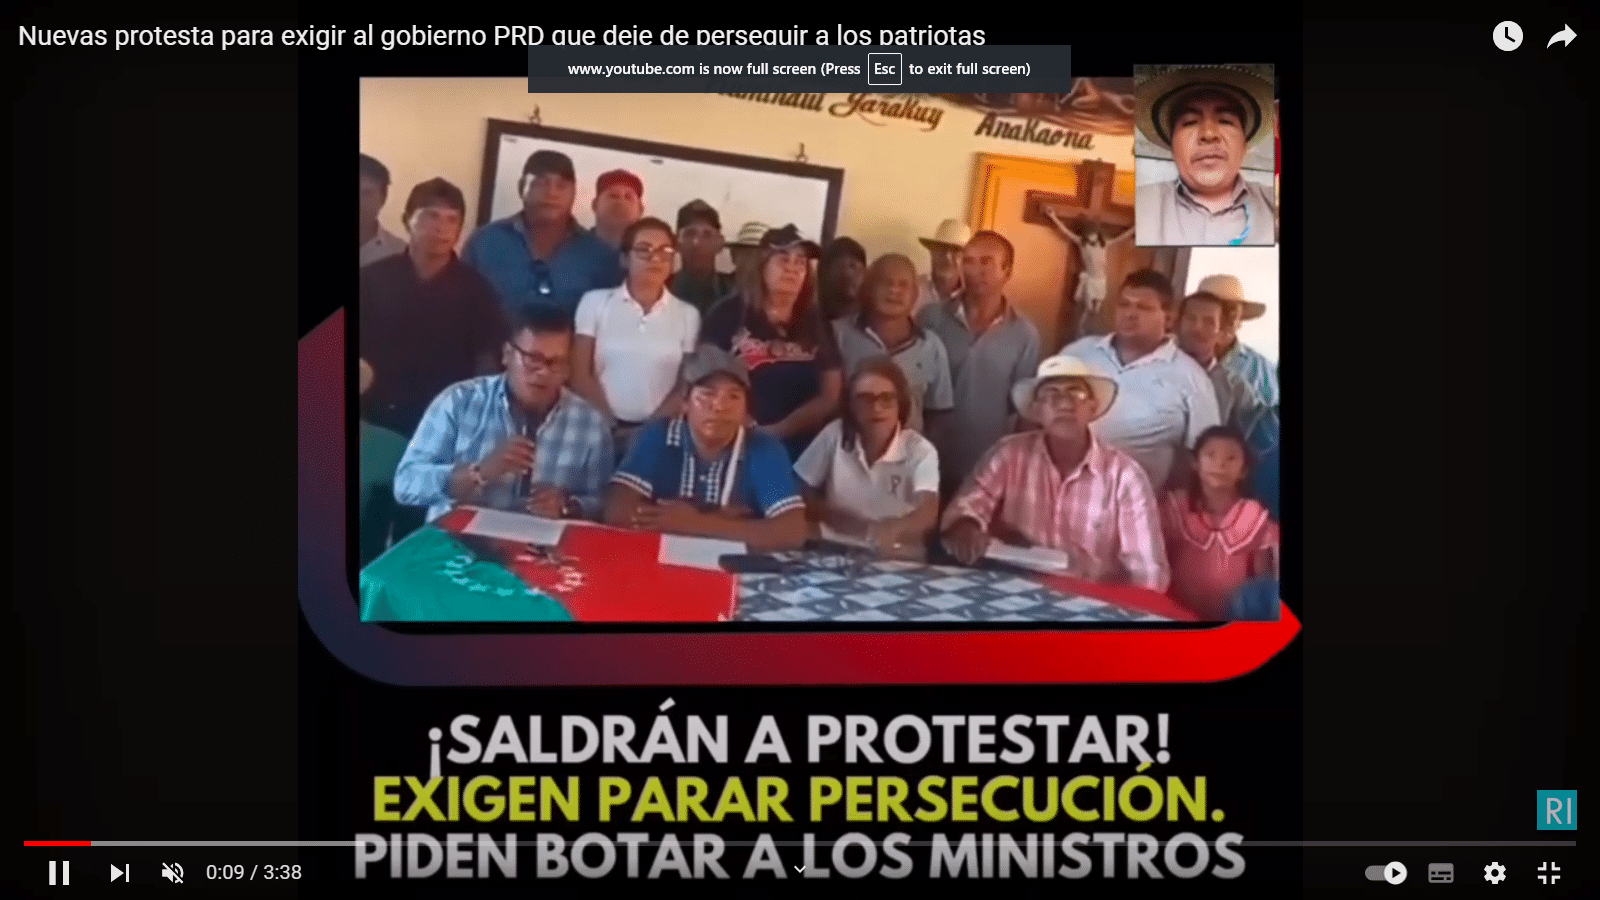 Nuevas protestas por persecucion a los patriotas panameños , por parte del gobierno PRD